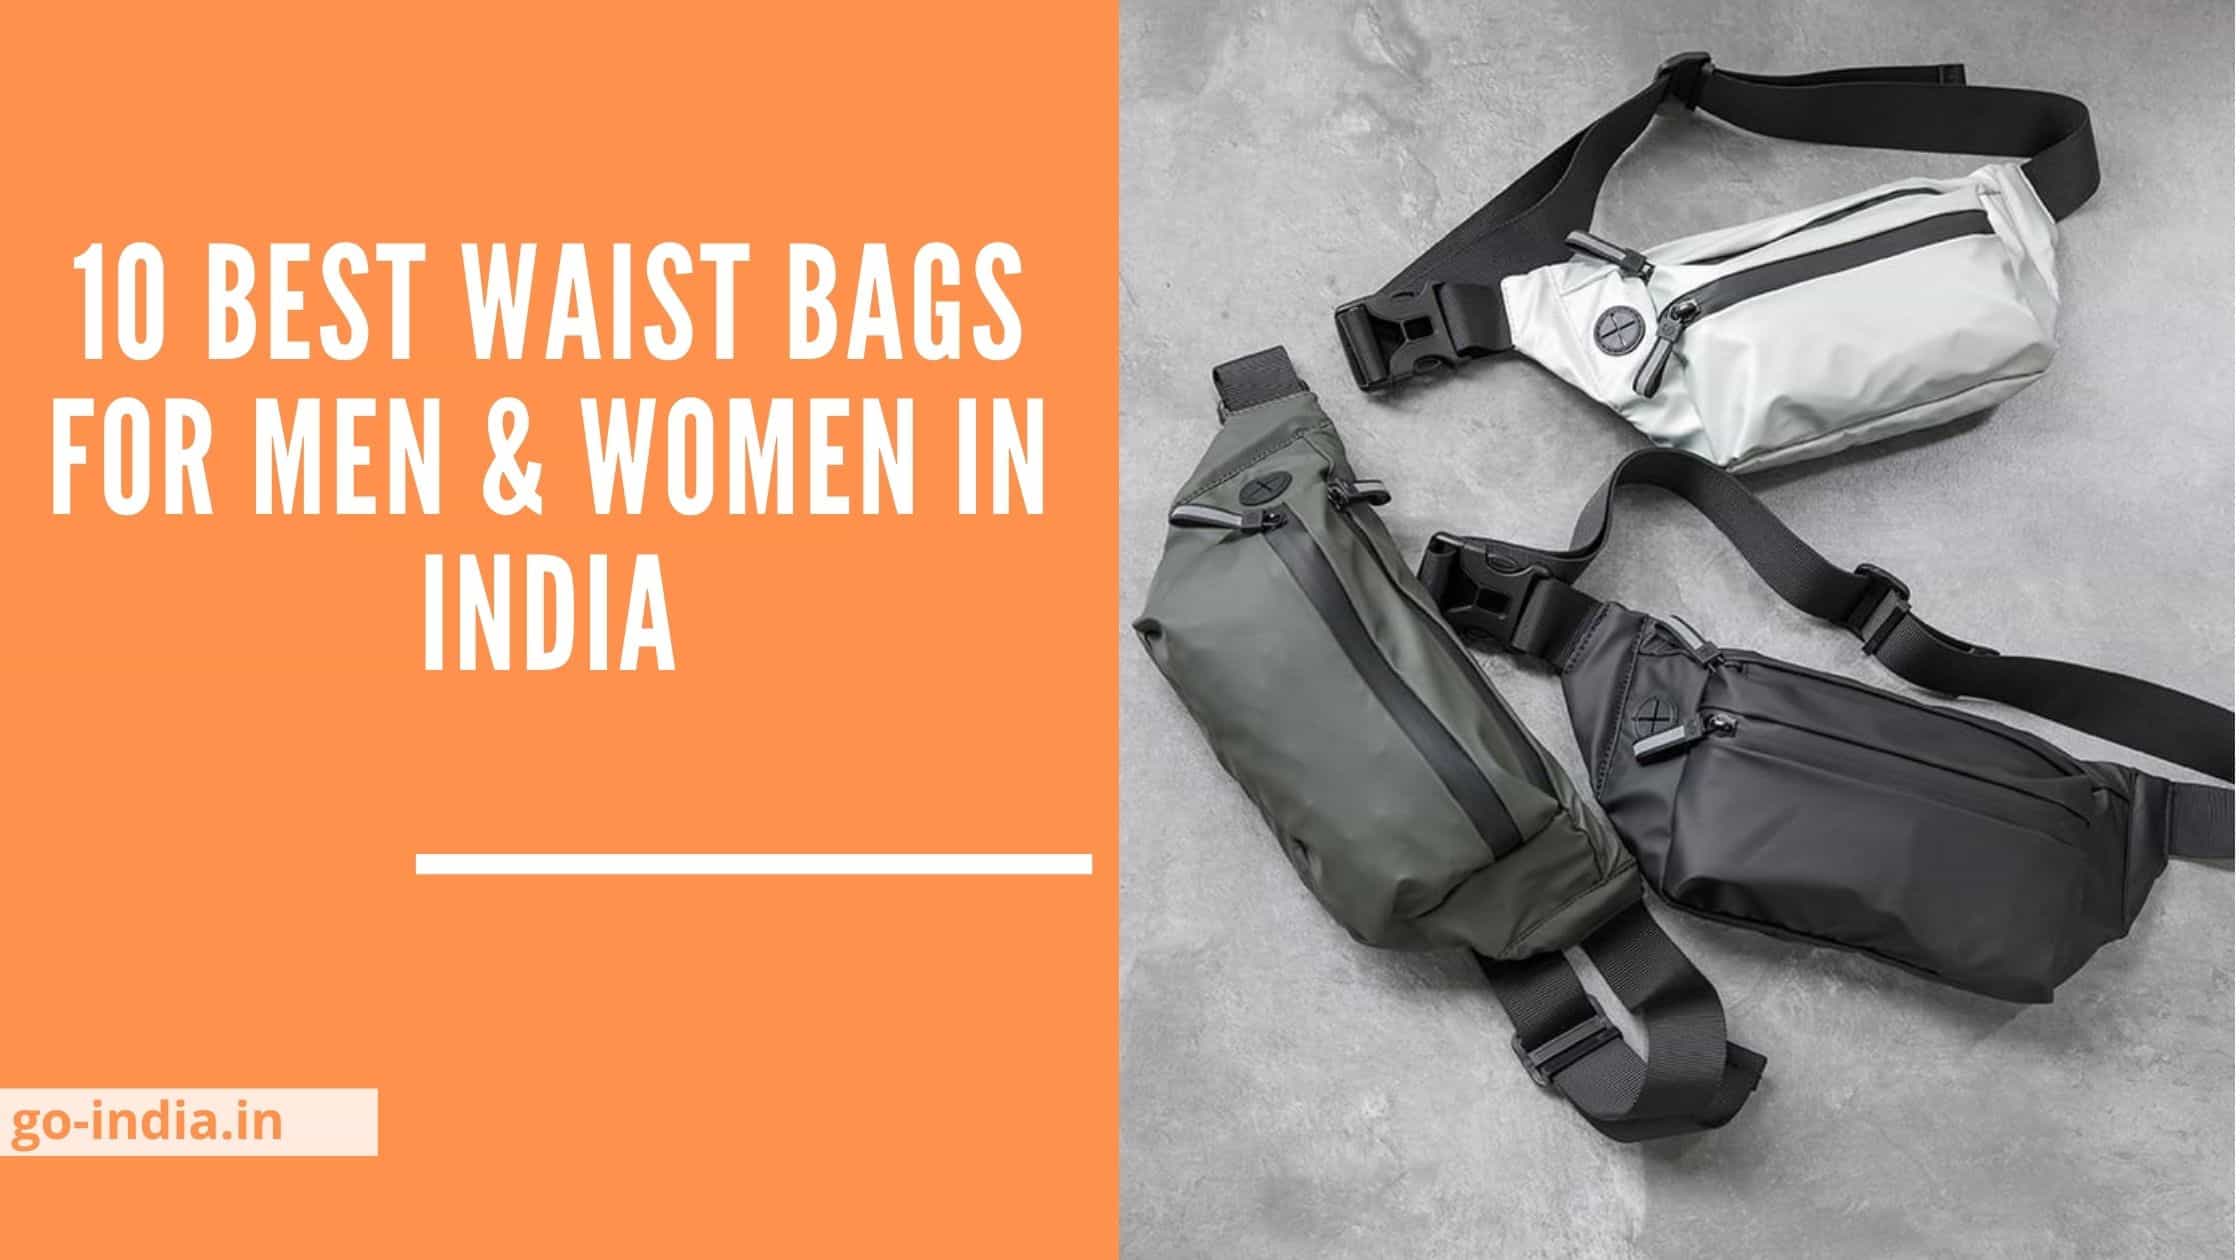 10 Best Waist Bags For Men & Women In India 2021